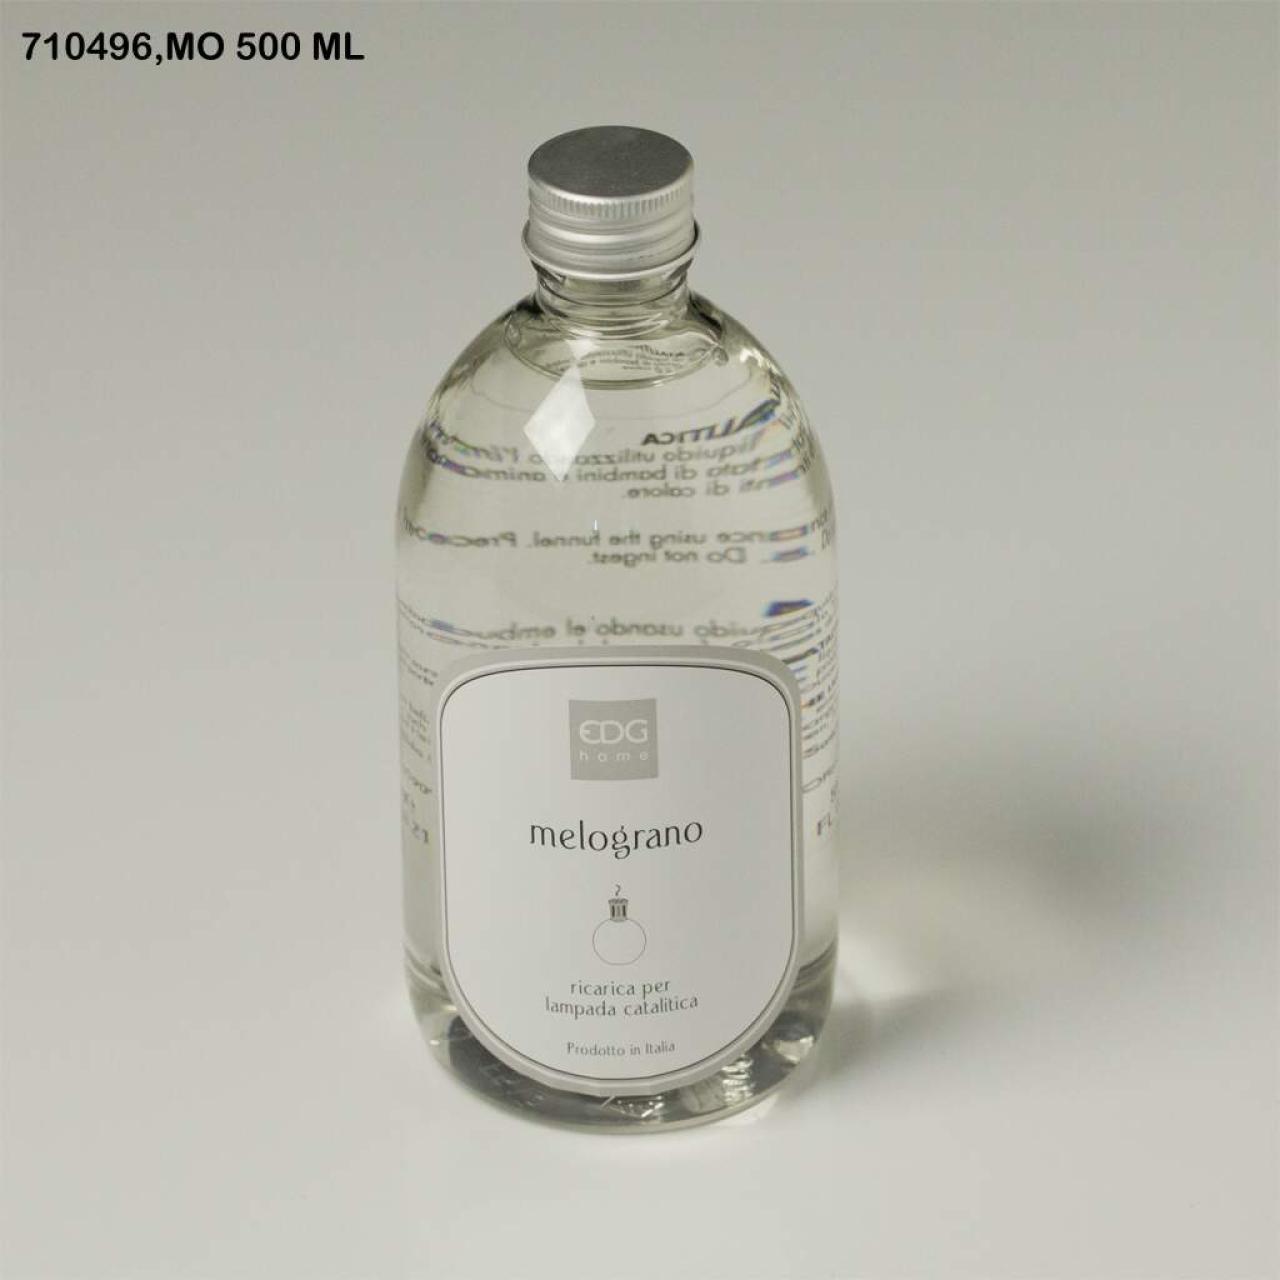 Ricarica per lampada catalitica 500 ml essenza: melograno - edg